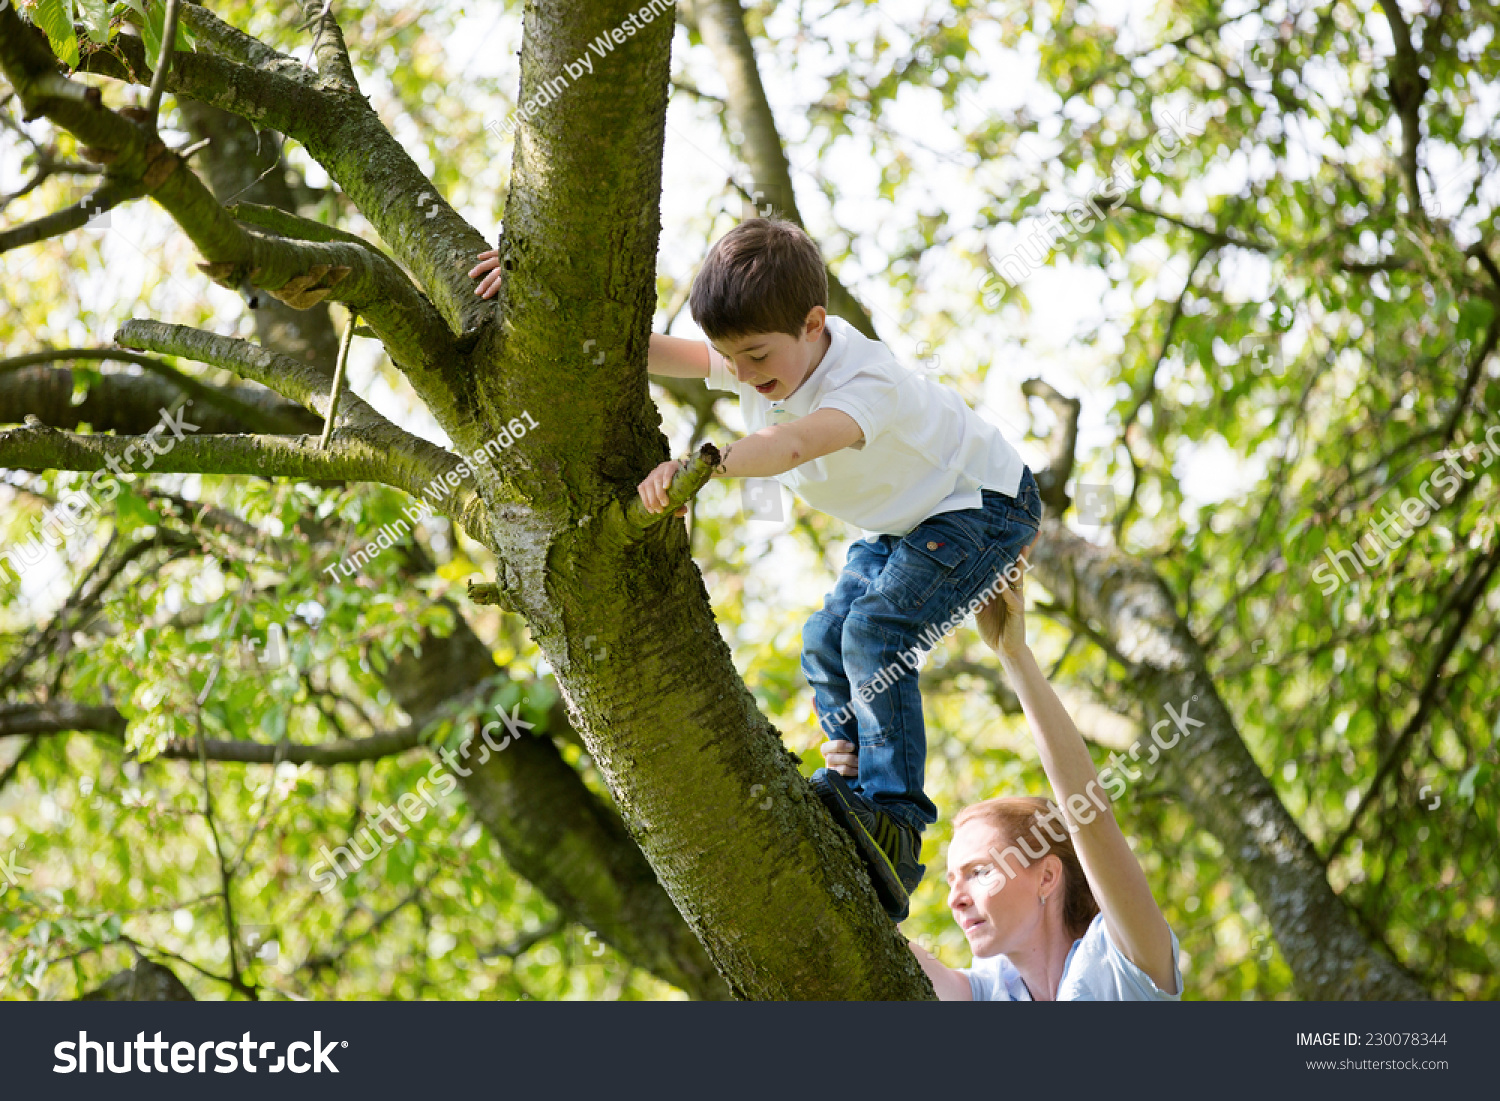 Eat from trees. Мальчик на дереве. Дерево для детей. Взбираться на дерево. Дети лазят по деревьям.